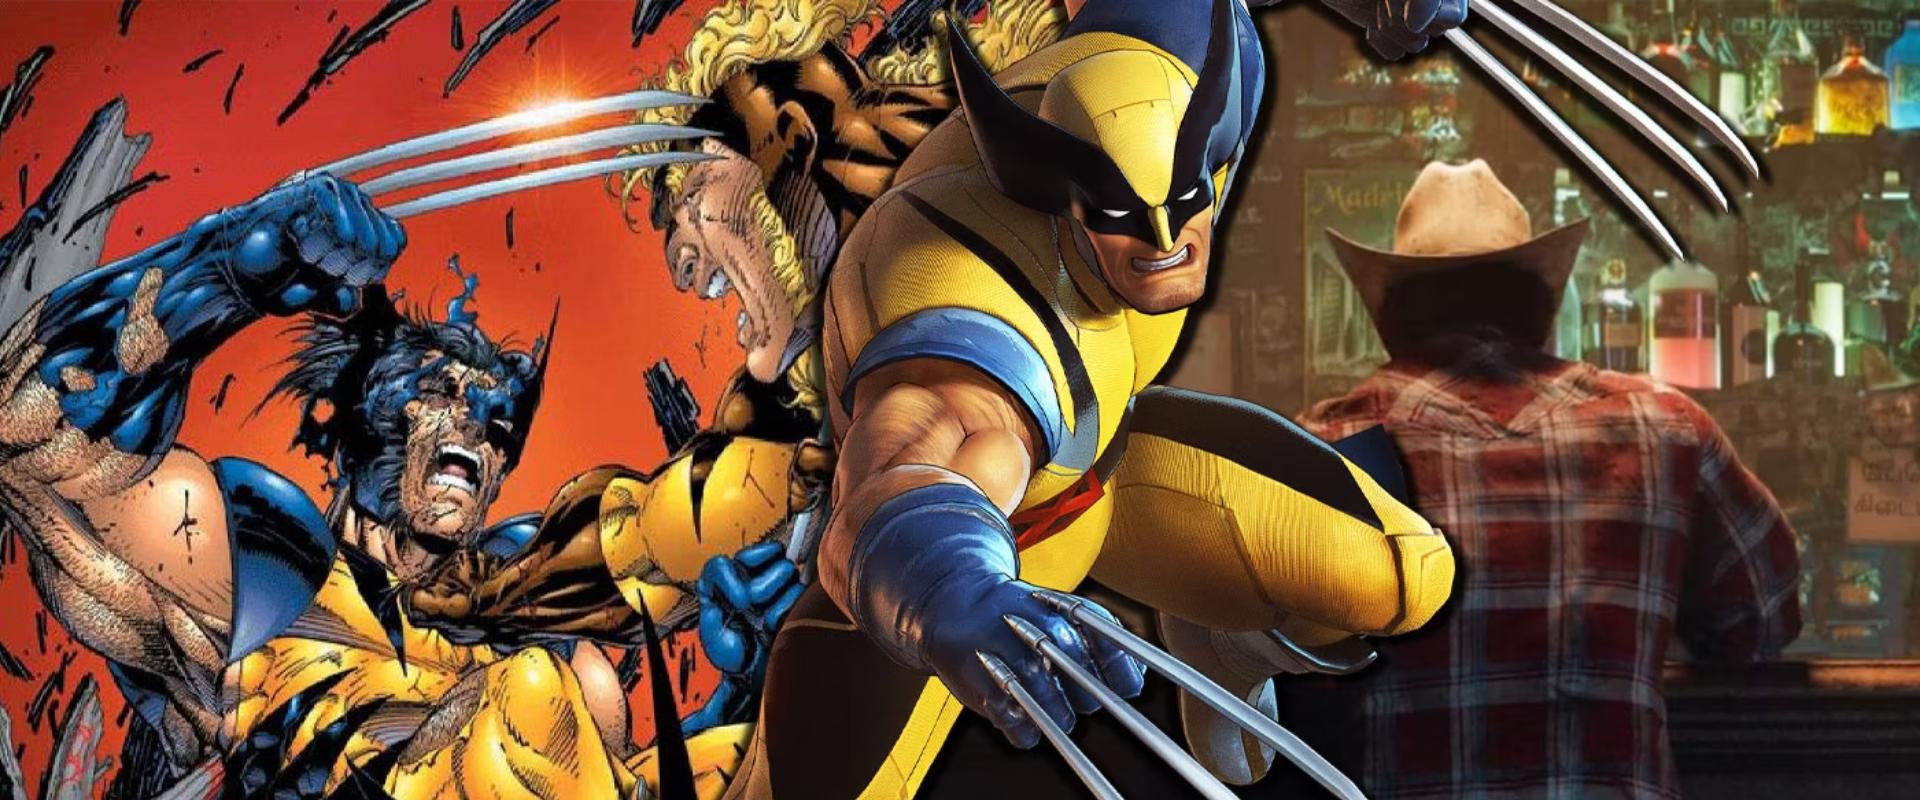 Marvel's Wolverine: Videón csodálhatjuk meg Rozsomák képességeit és fegyvereit